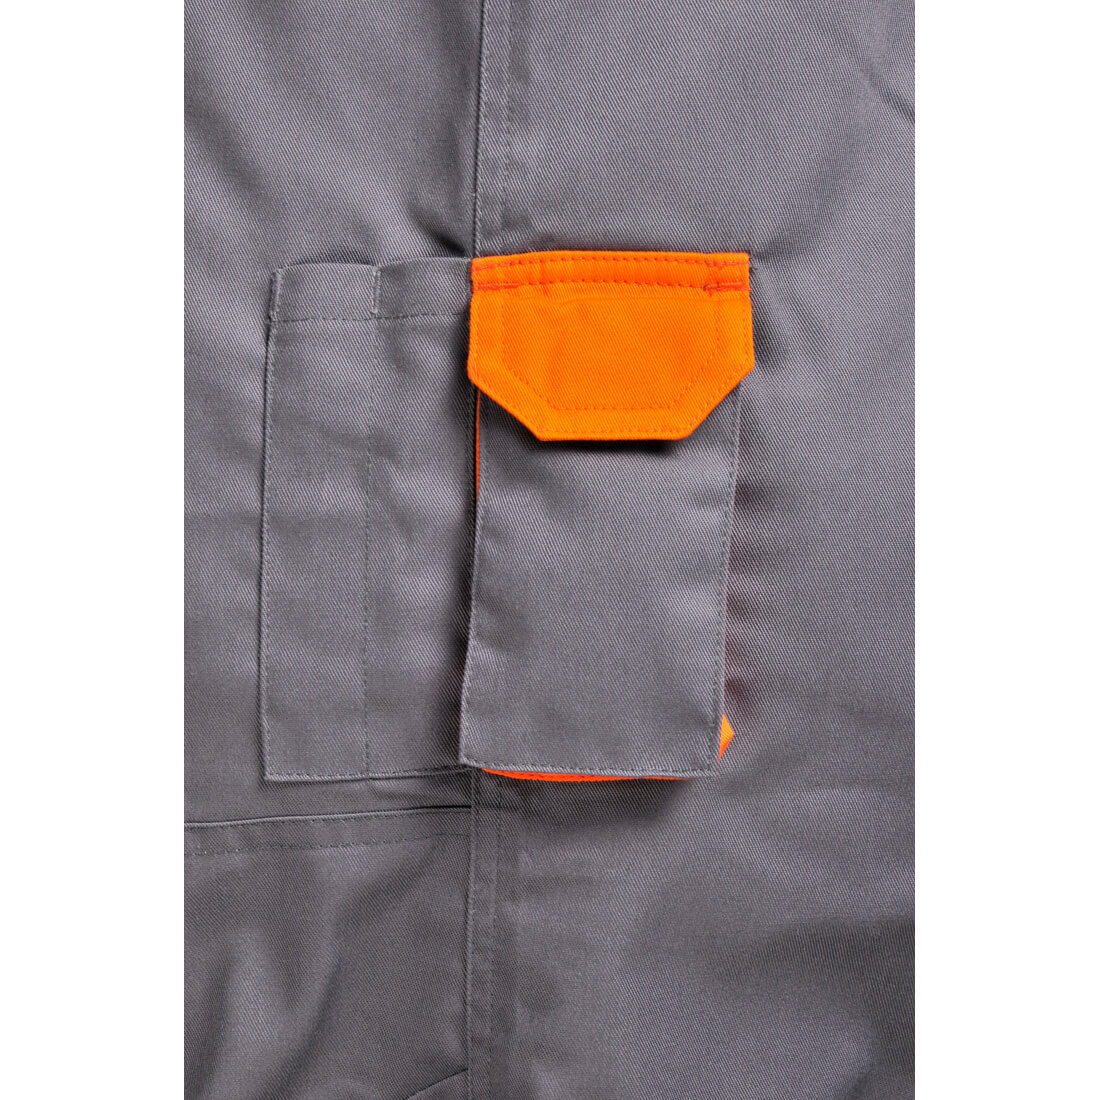 Pantalones bicolor Texo - Ropa de protección